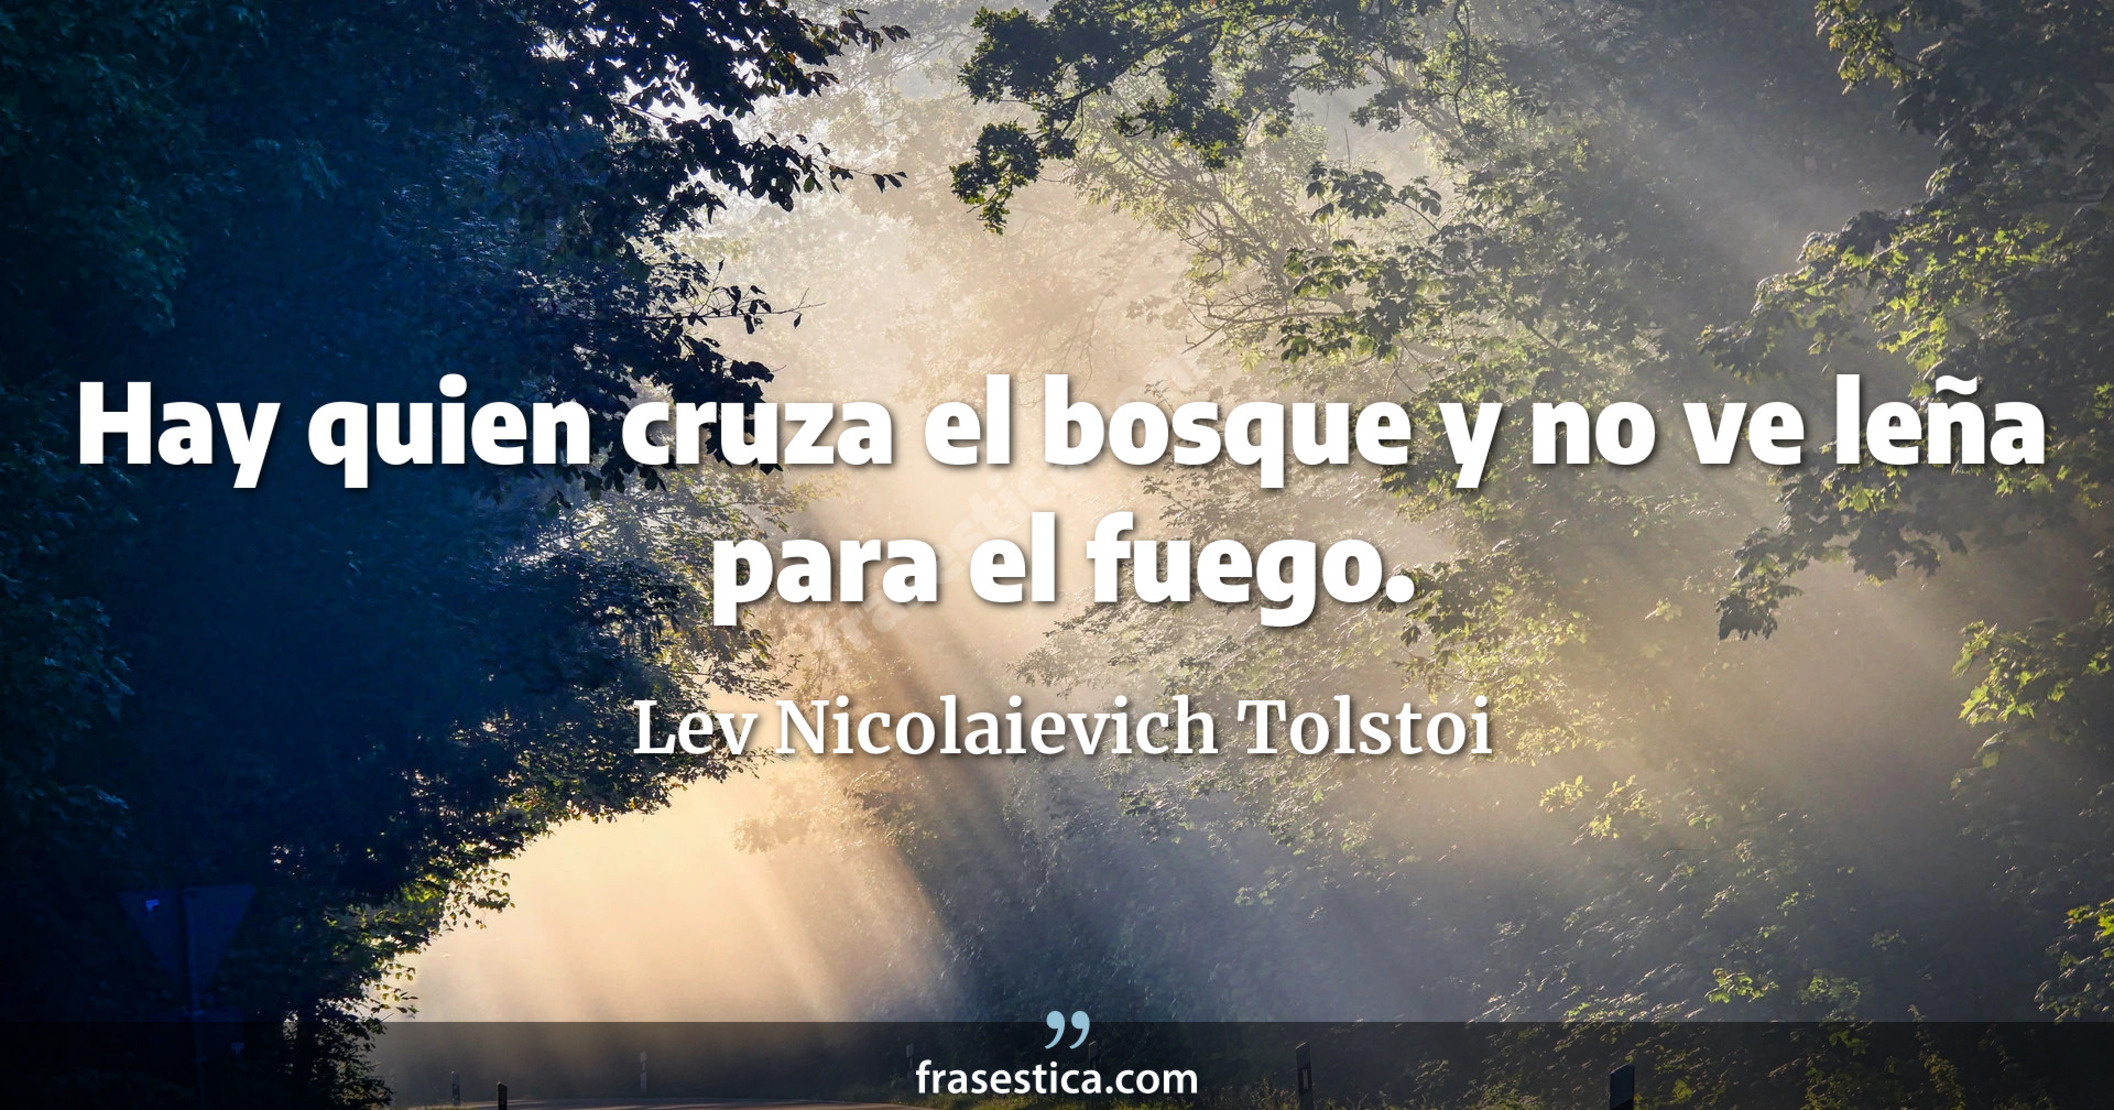 Hay quien cruza el bosque y no ve leña para el fuego. - Lev Nicolaievich Tolstoi